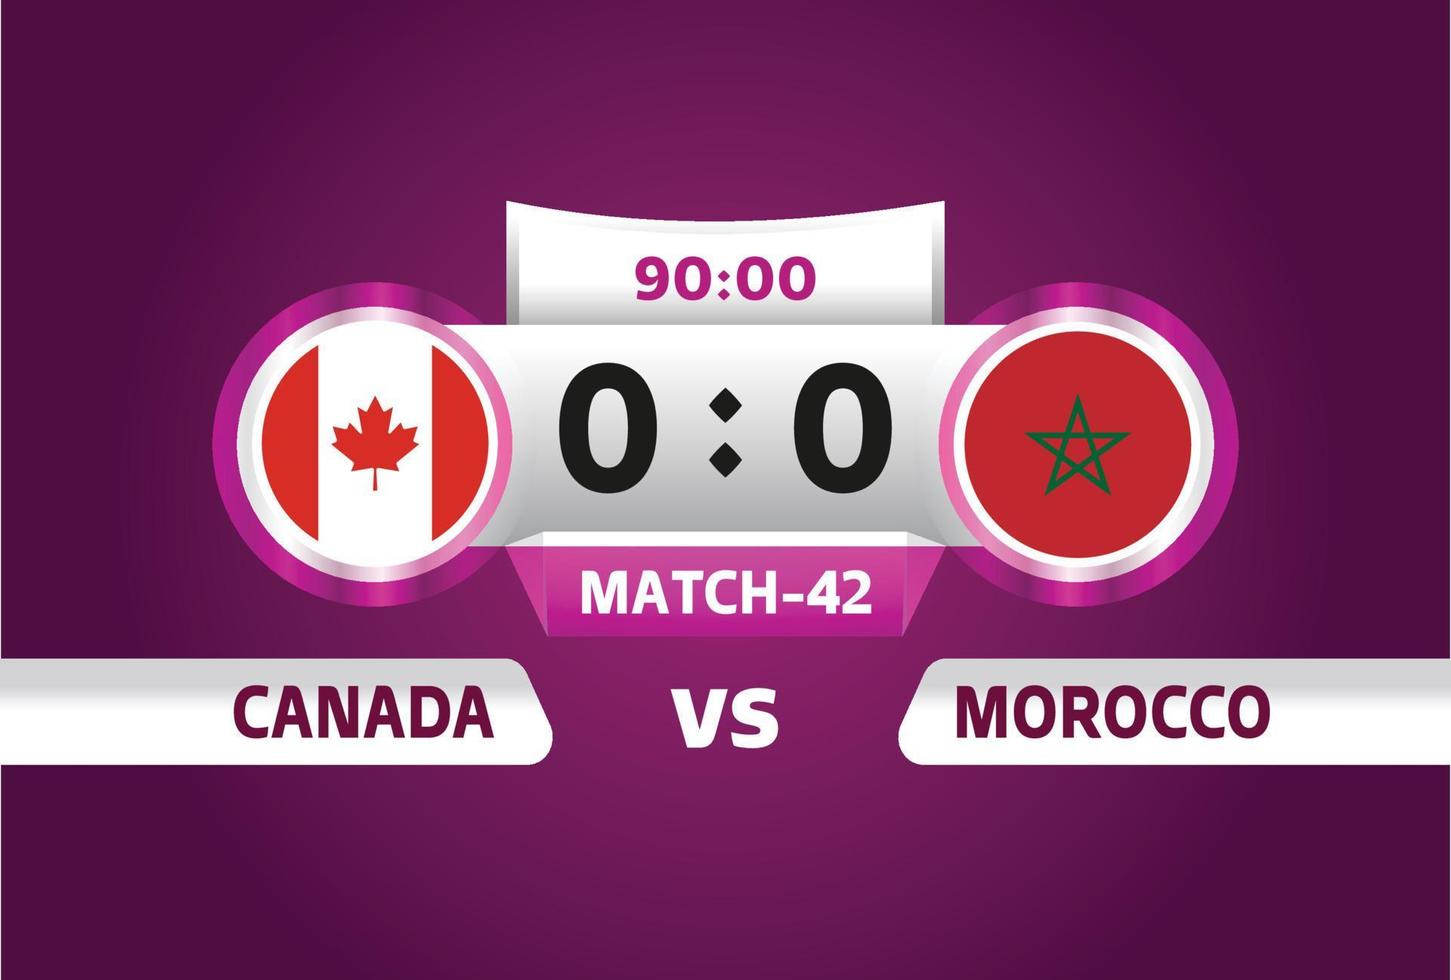 Kanada vs Marocko, fotboll 2022, grupp f. världsfotbollstävling mästerskap match kontra lag intro sport bakgrund, mästerskap konkurrens sista affisch, vektorillustration. vektor